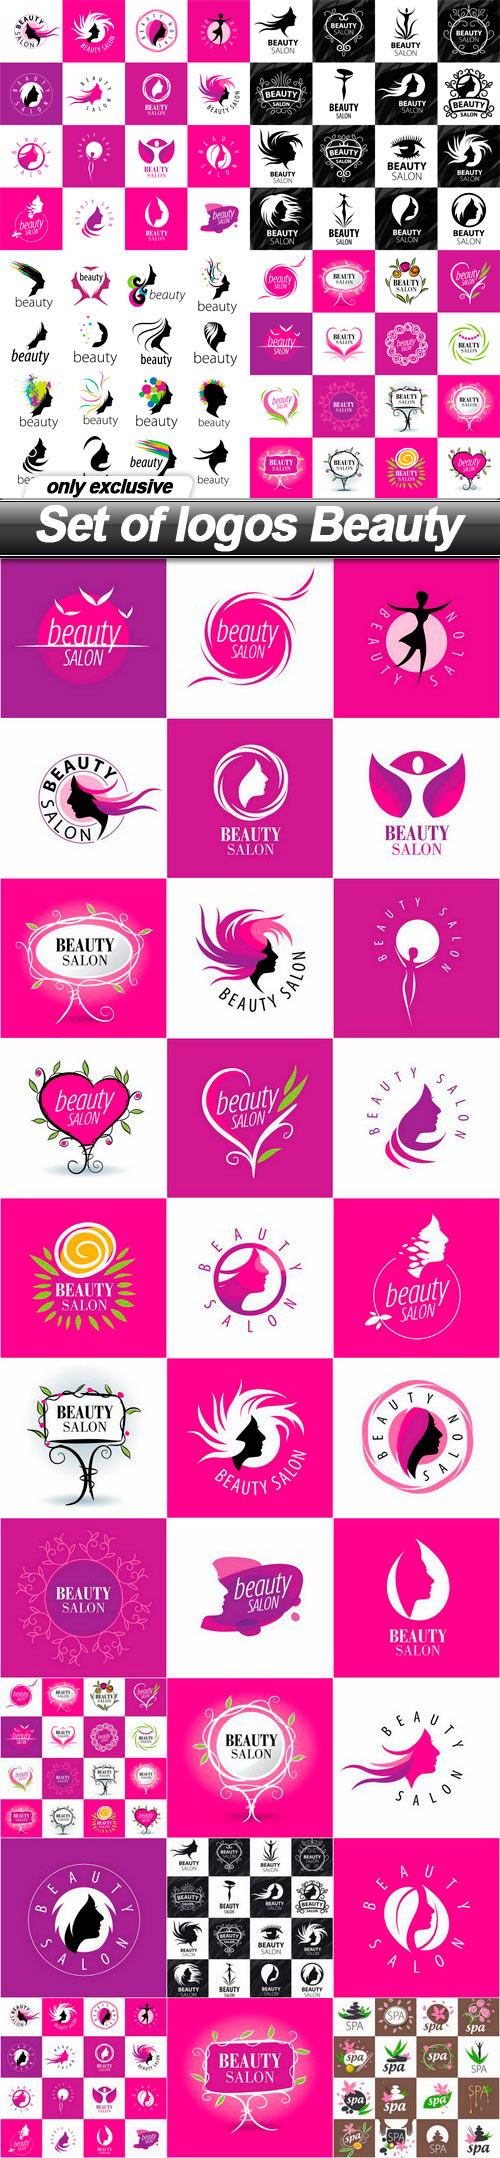 Set of logos Beauty - 31 EPS